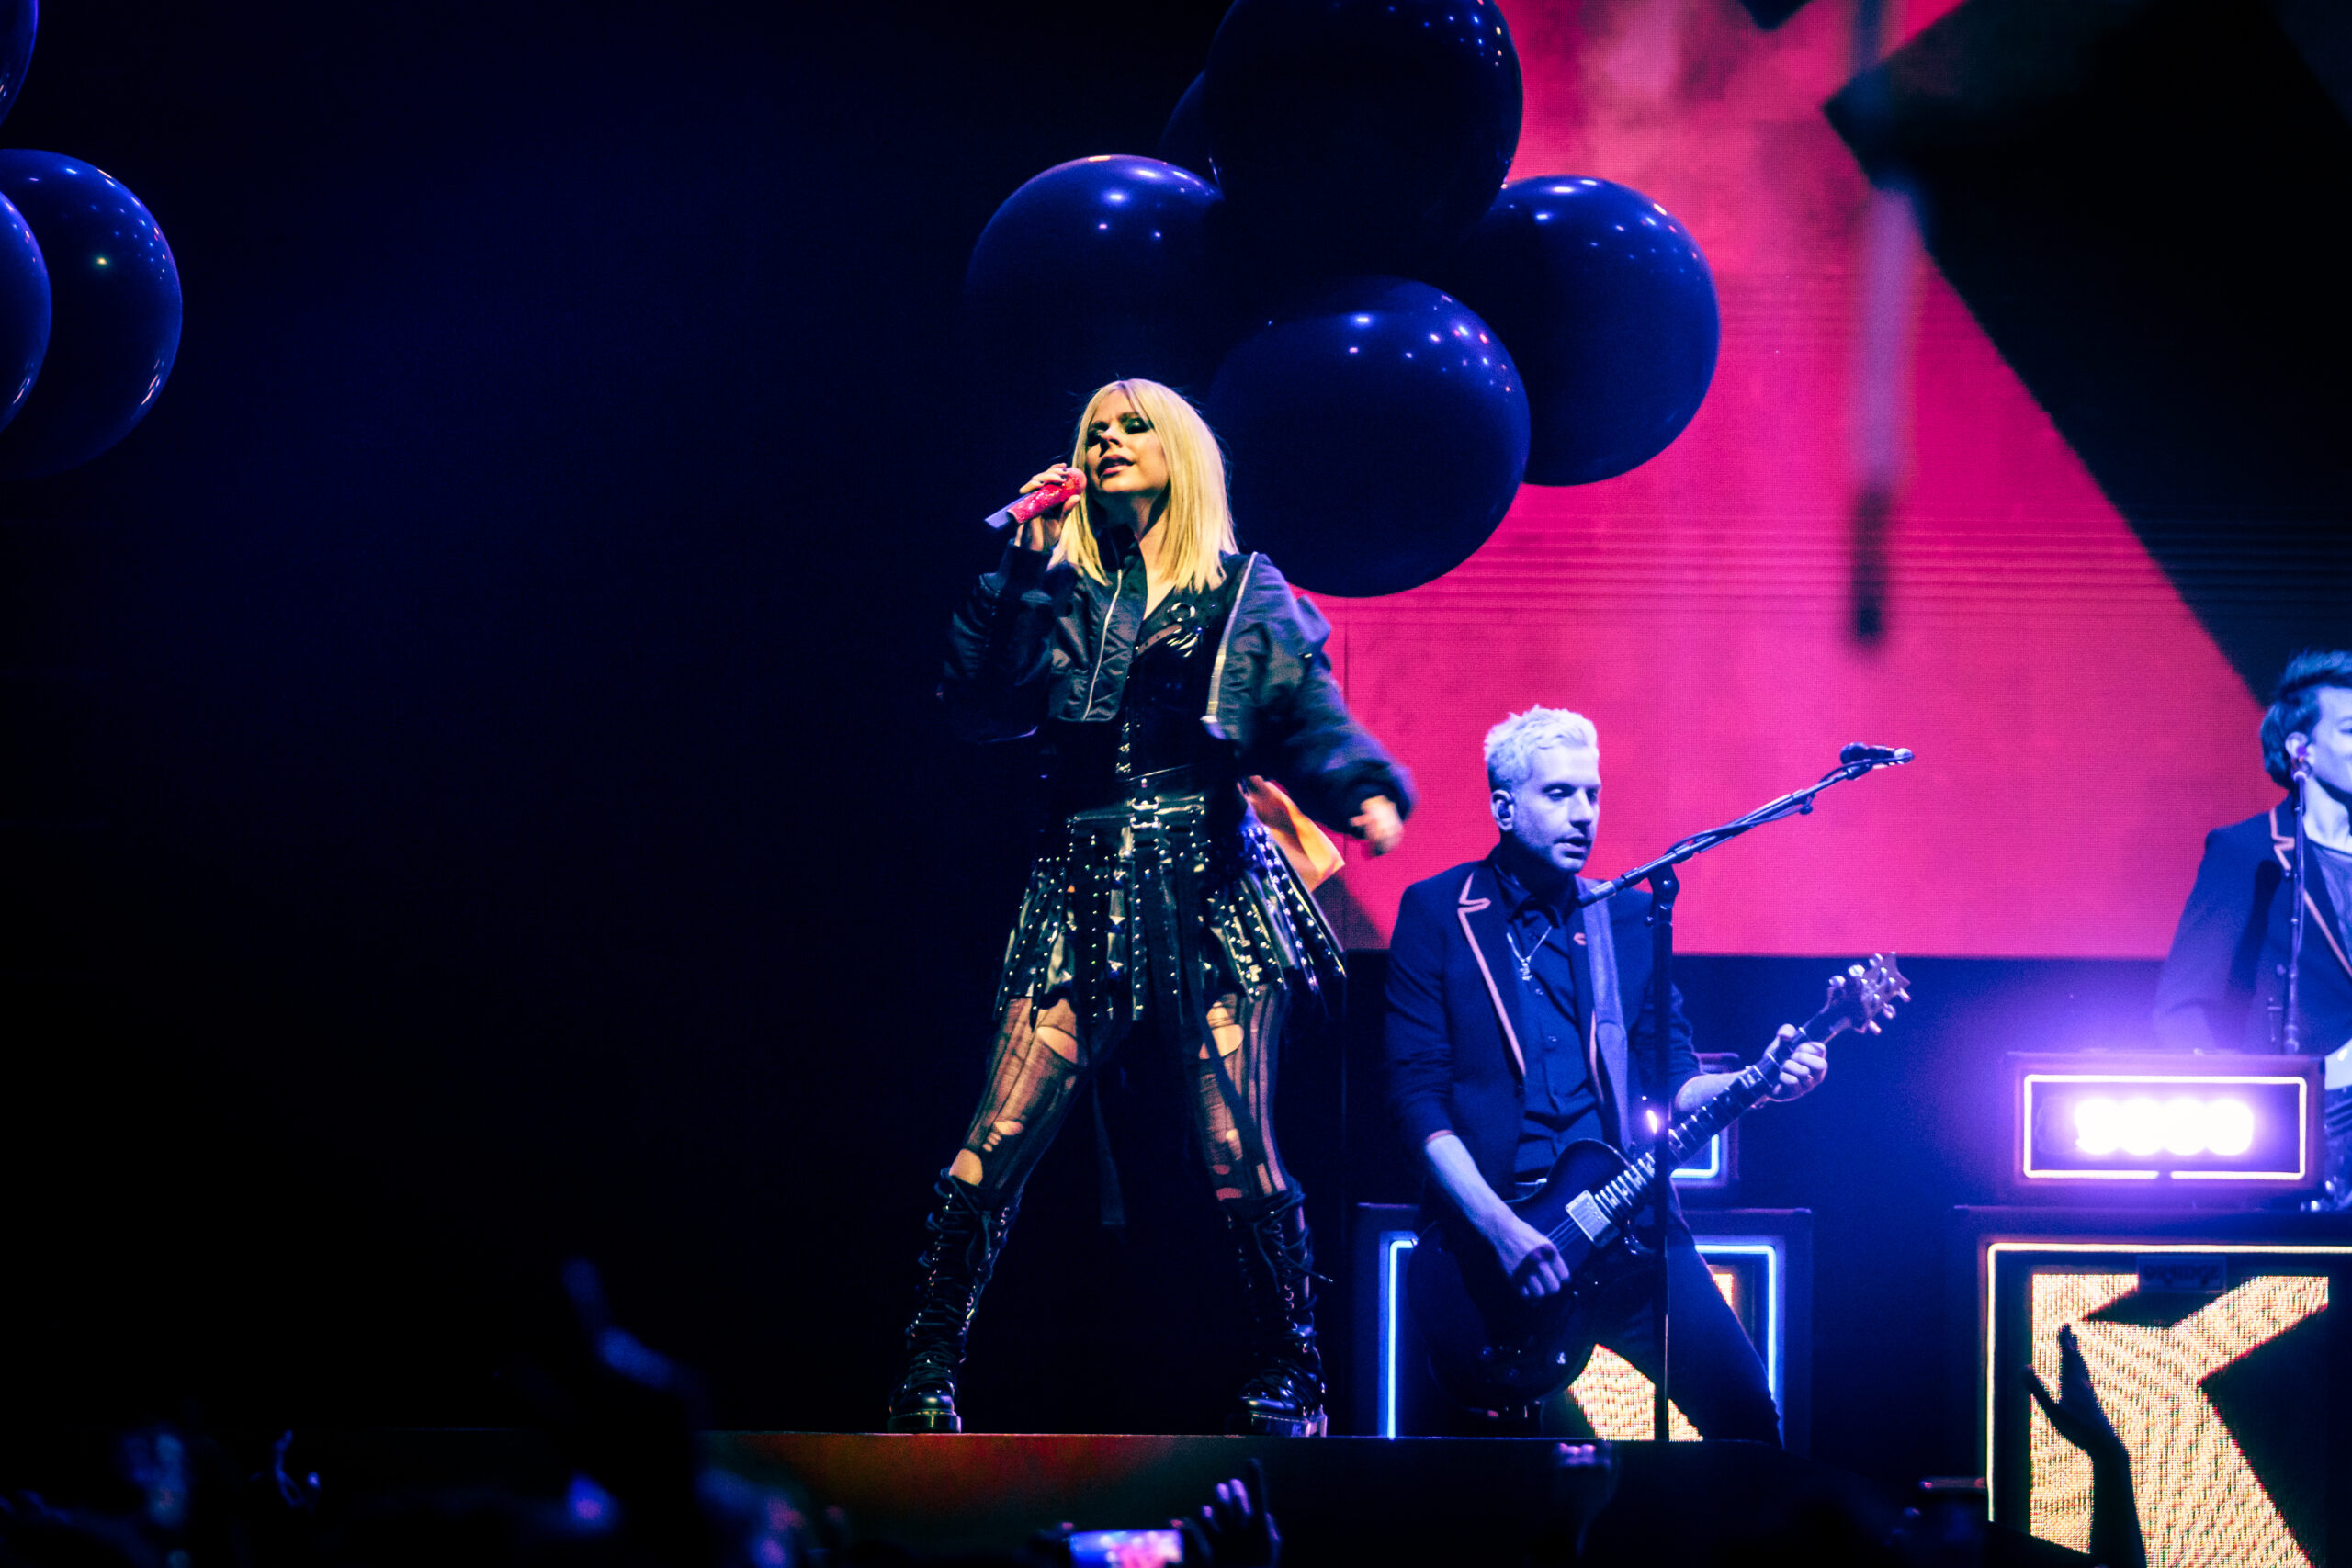 Sie hat's immer noch drauf: Avril Lavigne, mittlerweile 38 Jahre alt, rockte am Montagabend die Sporthalle Hamburg.